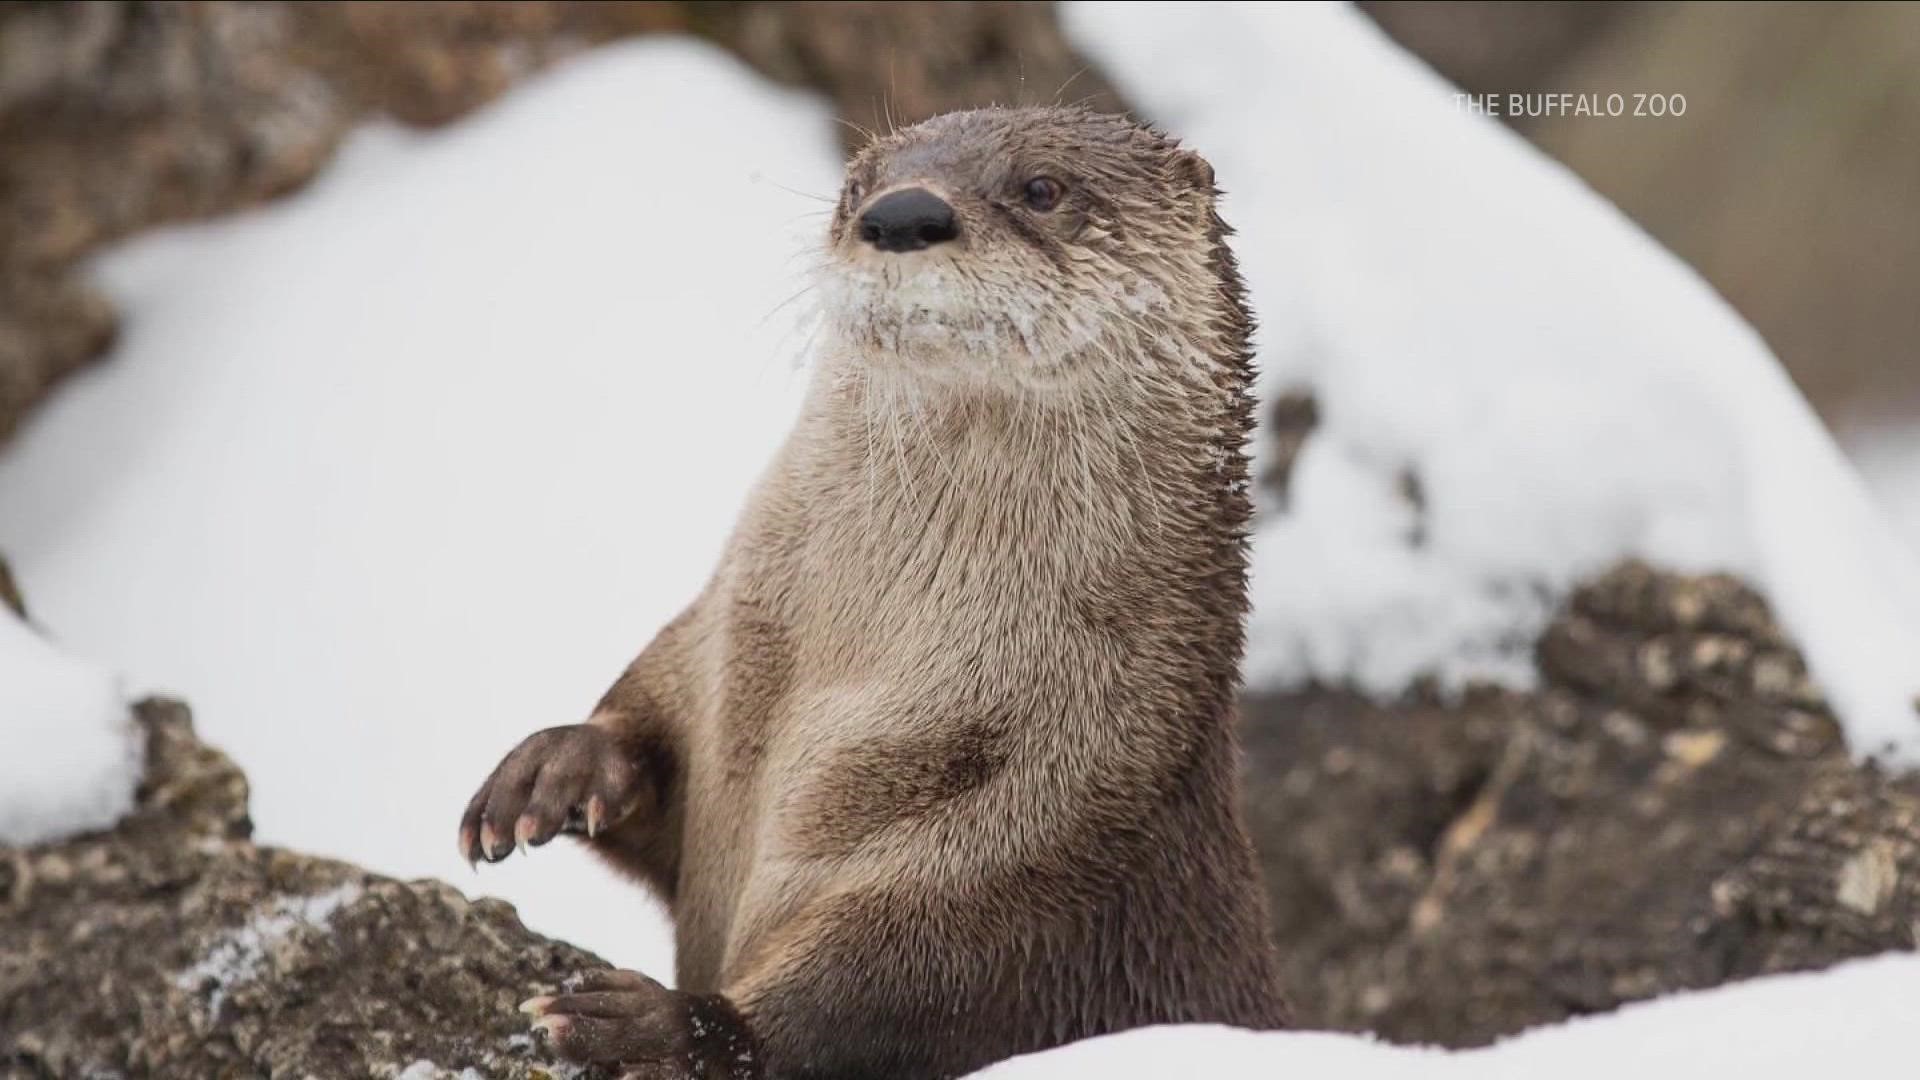 Daisy the Otter passes away at the Buffalo Zoo